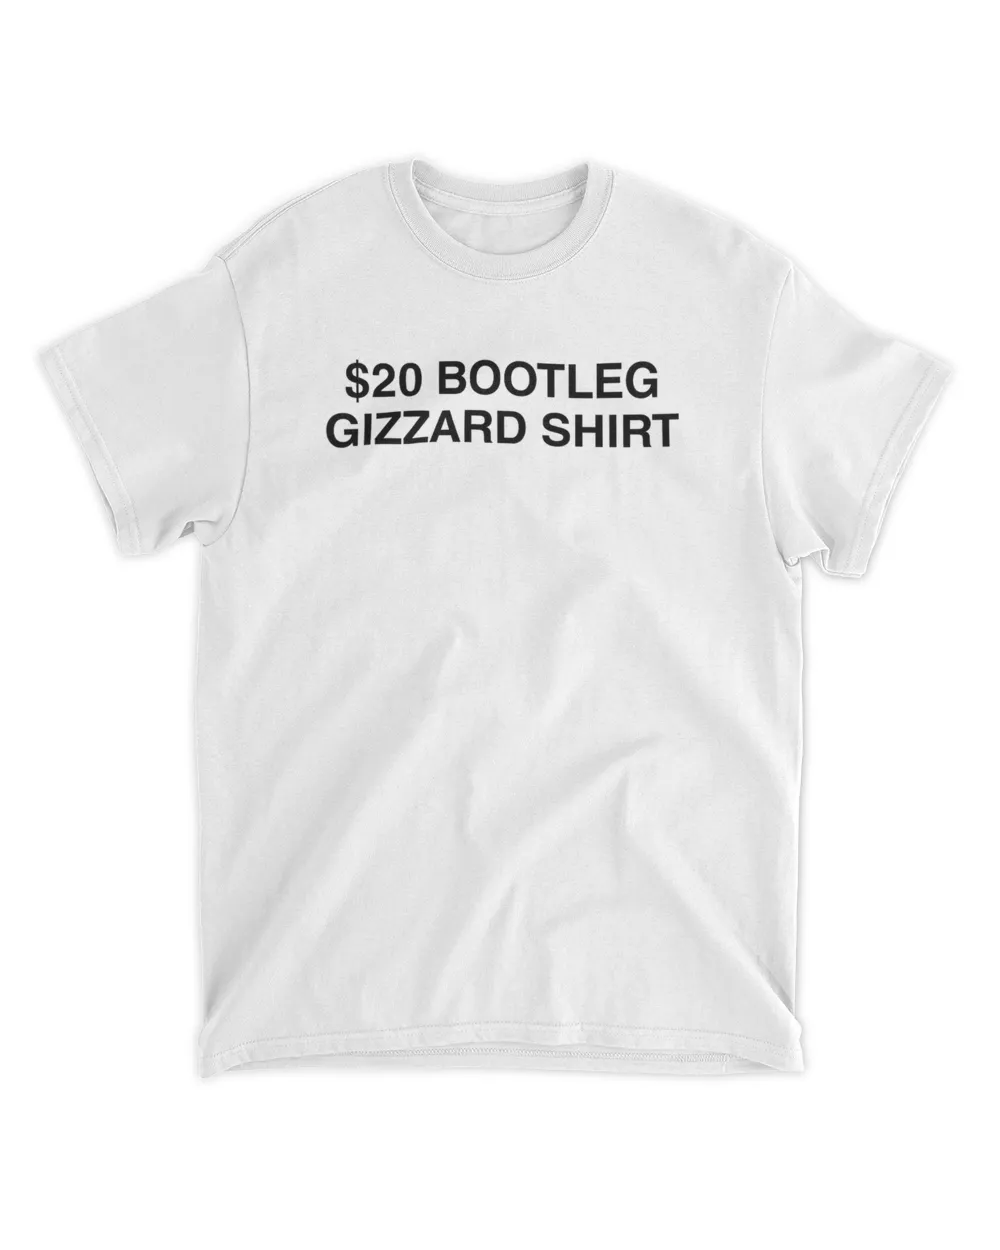 $20 Bootleg Gizzard Shirt Shirt